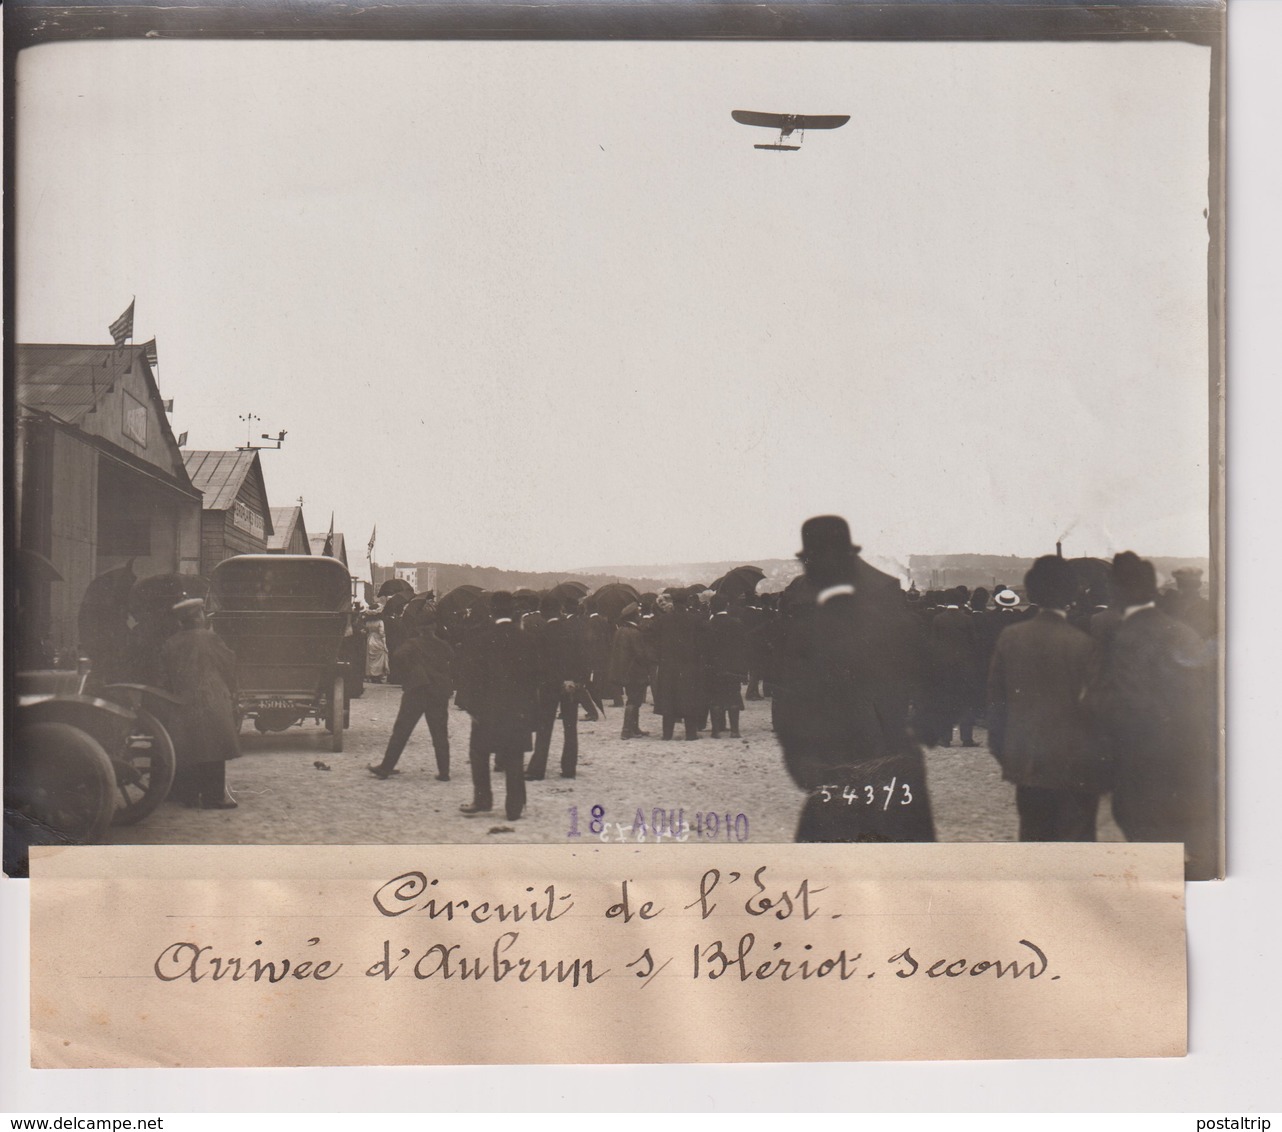 Issy-les-Moulineaux CIRCUIT DE L'EST ARRIVÉE D'AUBRUN DUR BLERIOT SECOND 18*13CM Maurice-Louis BRANGER PARÍS (1874-1950) - Aviación